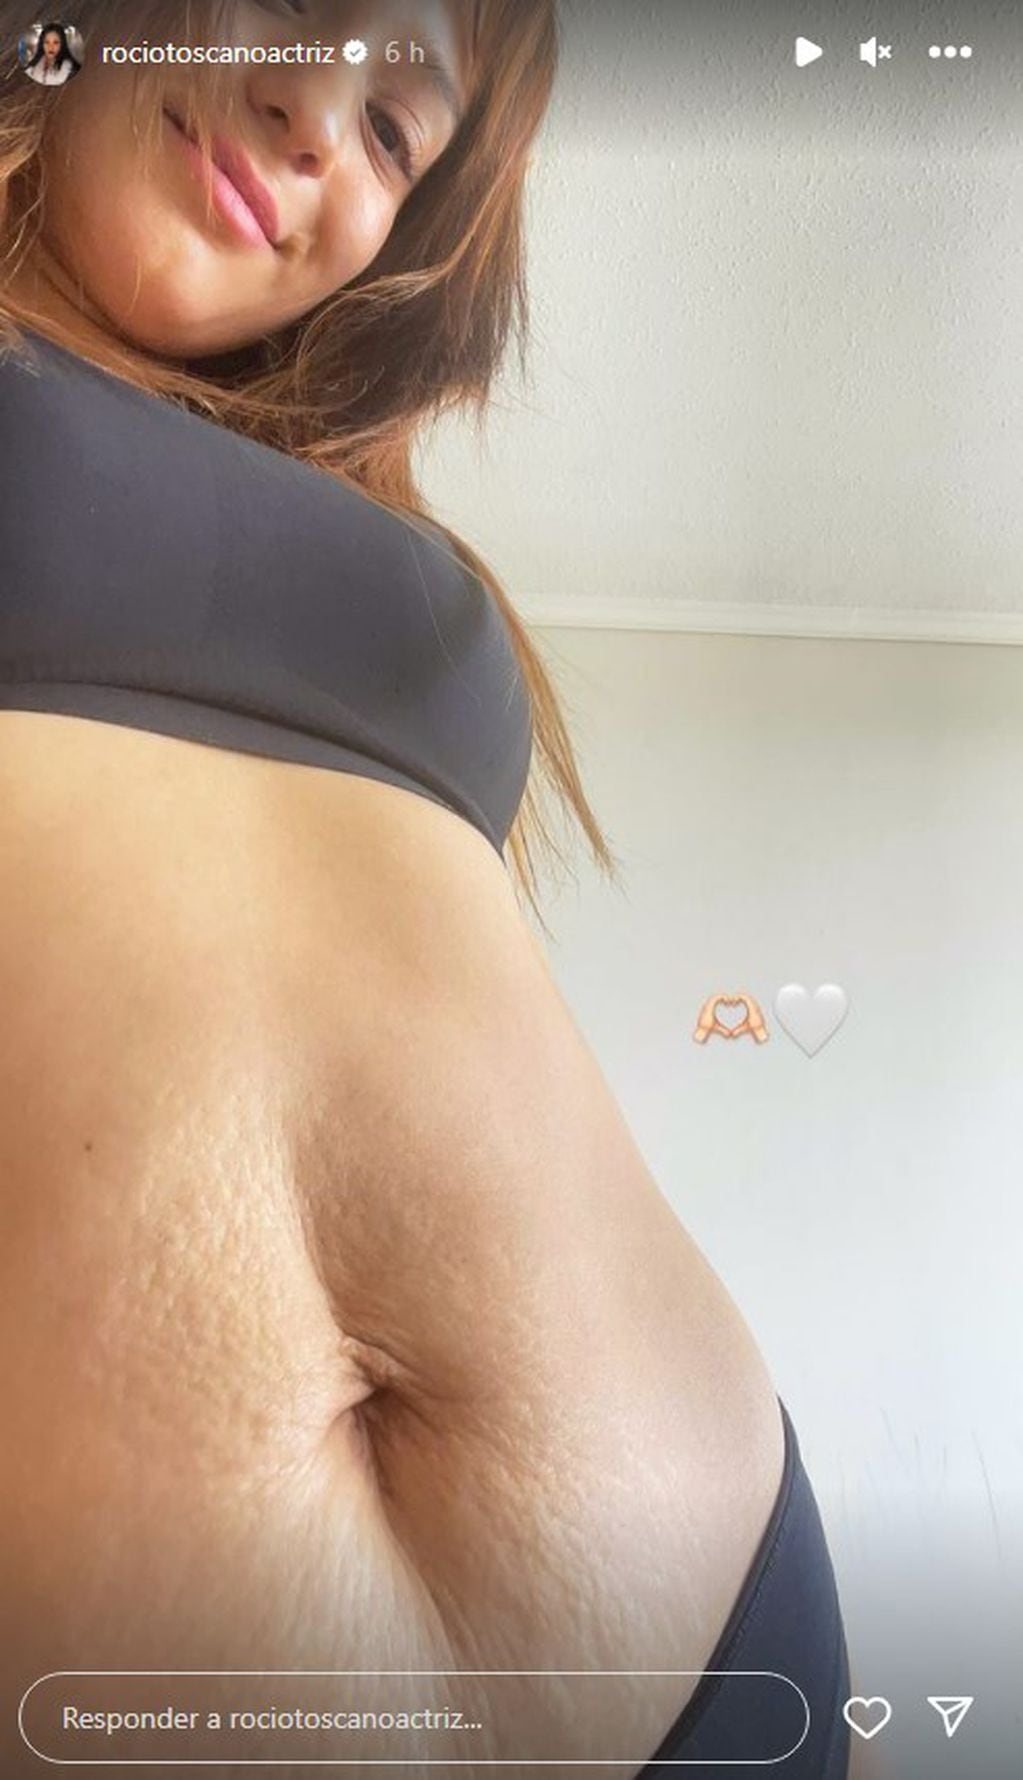 Rocío Toscano en Instagram.